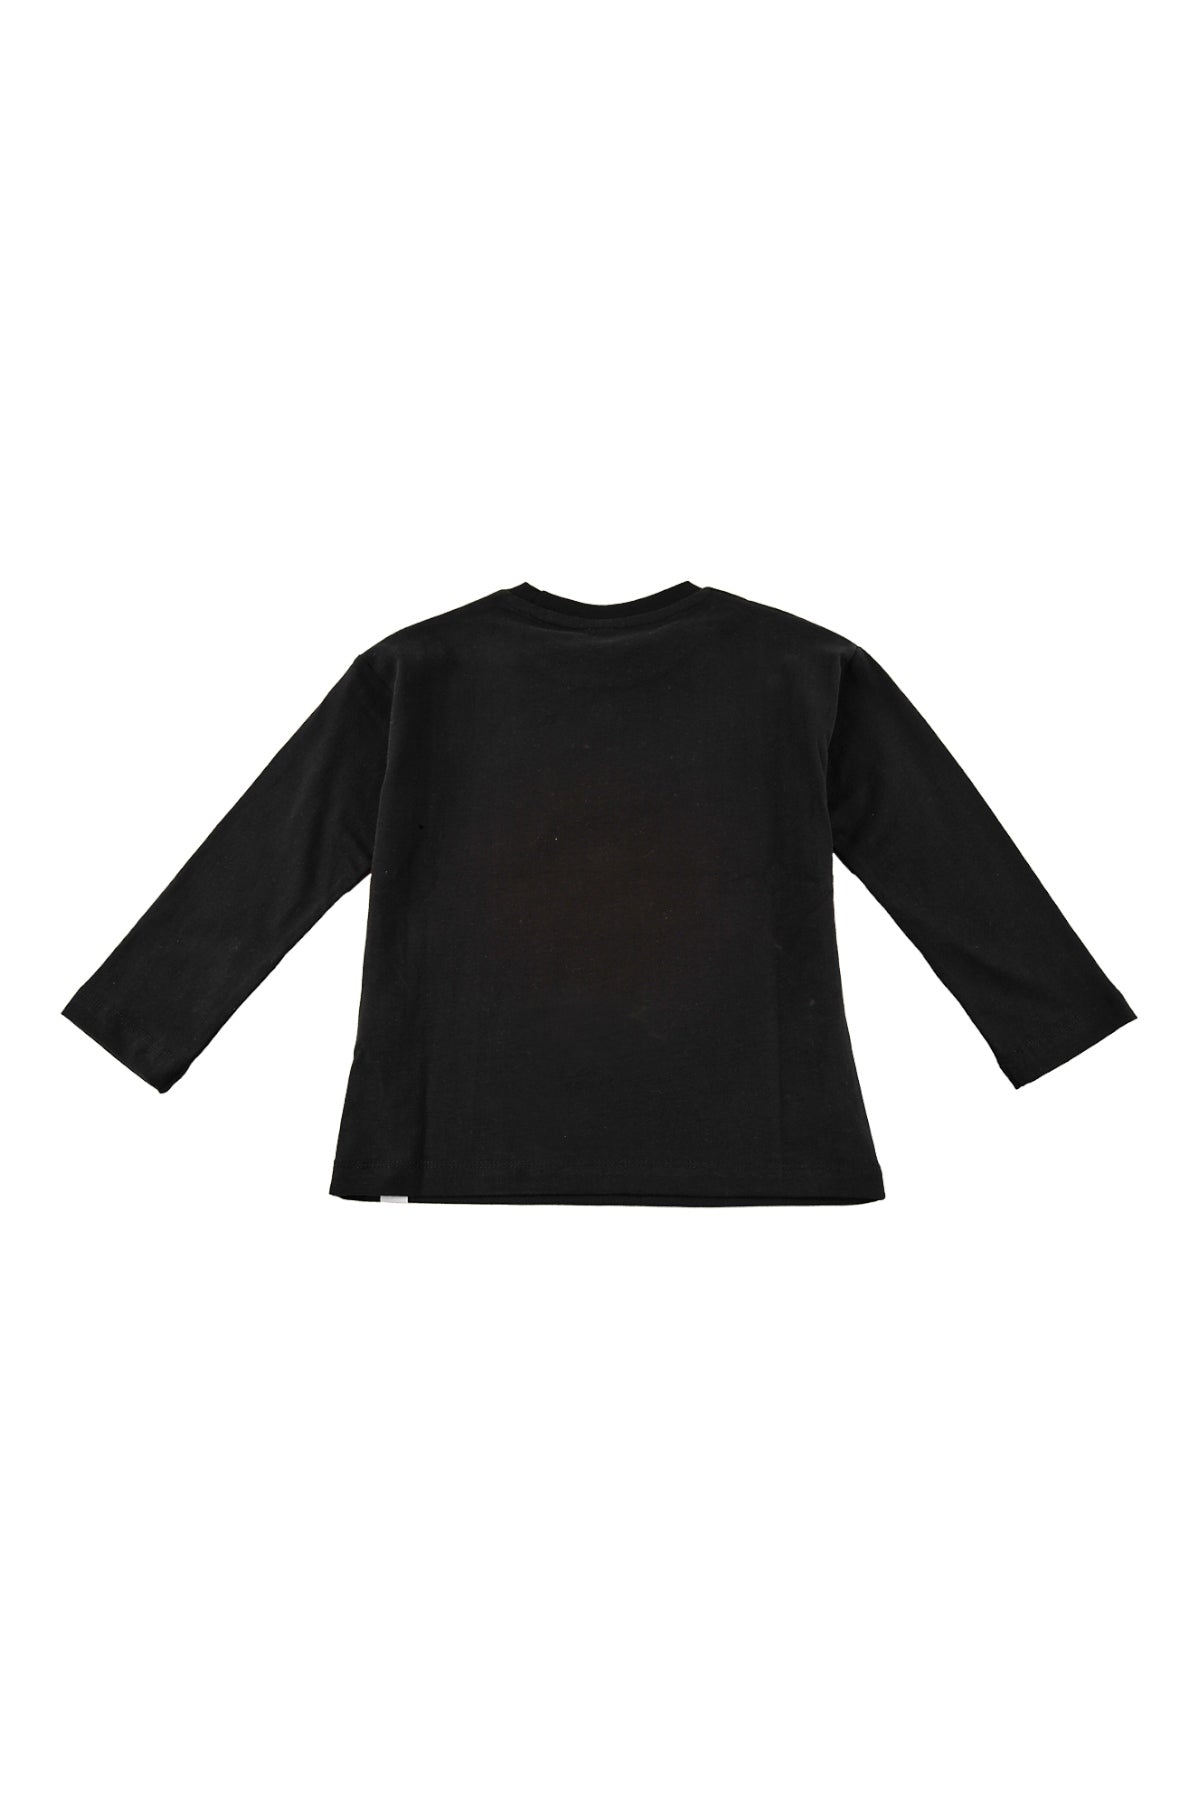 Erkek Bebek Siyah Baskılı Uzun Kollu T-Shirt (9ay-4yaş)-4